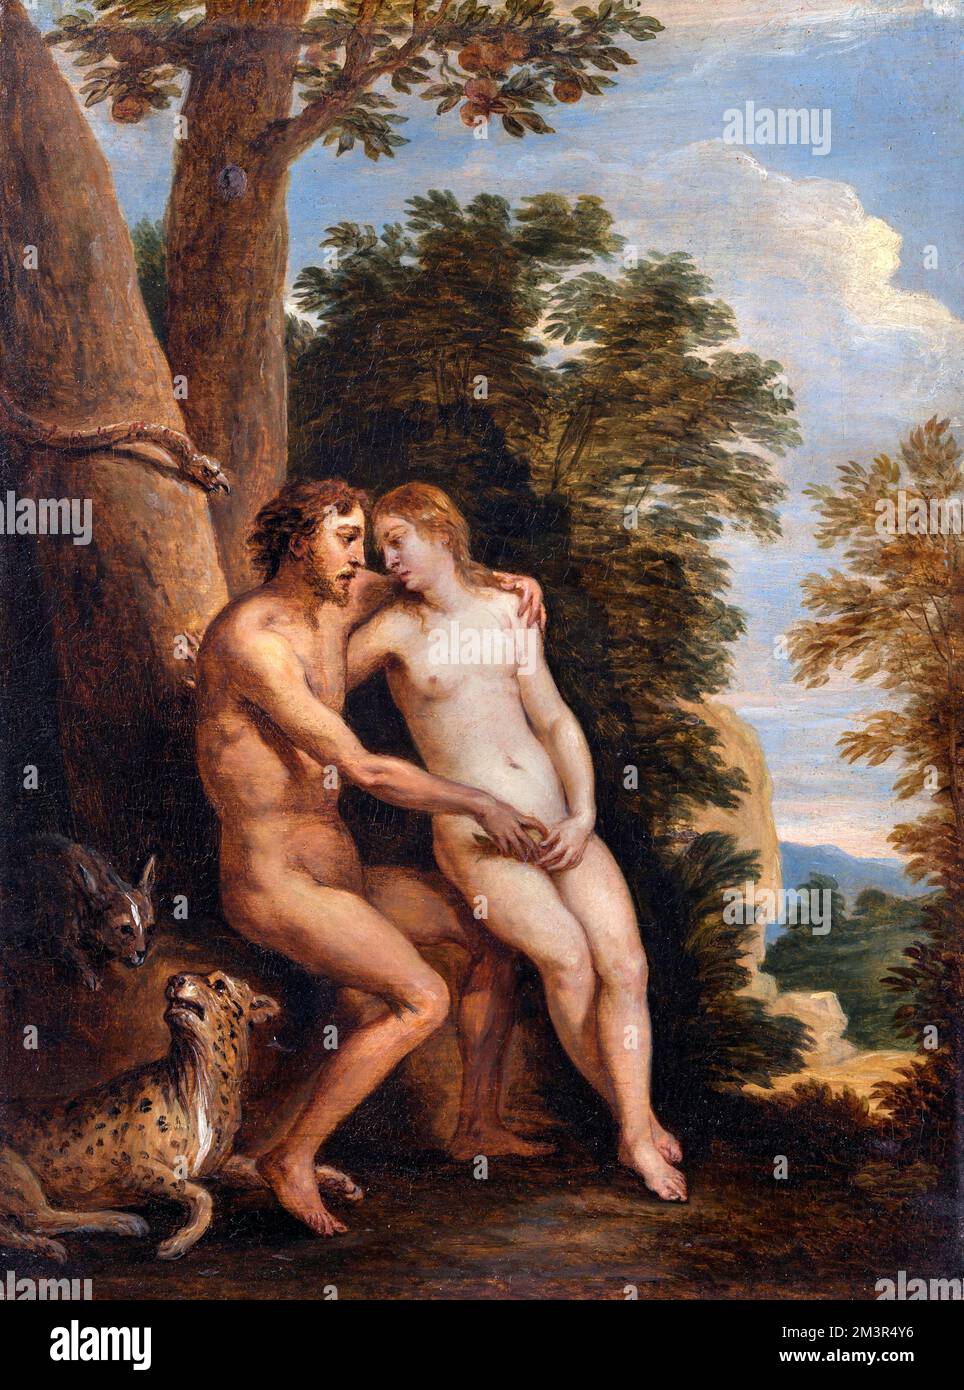 Adam et Eve par David Teniers le plus jeune (1610-1690), huile sur panneau, 1650s Banque D'Images